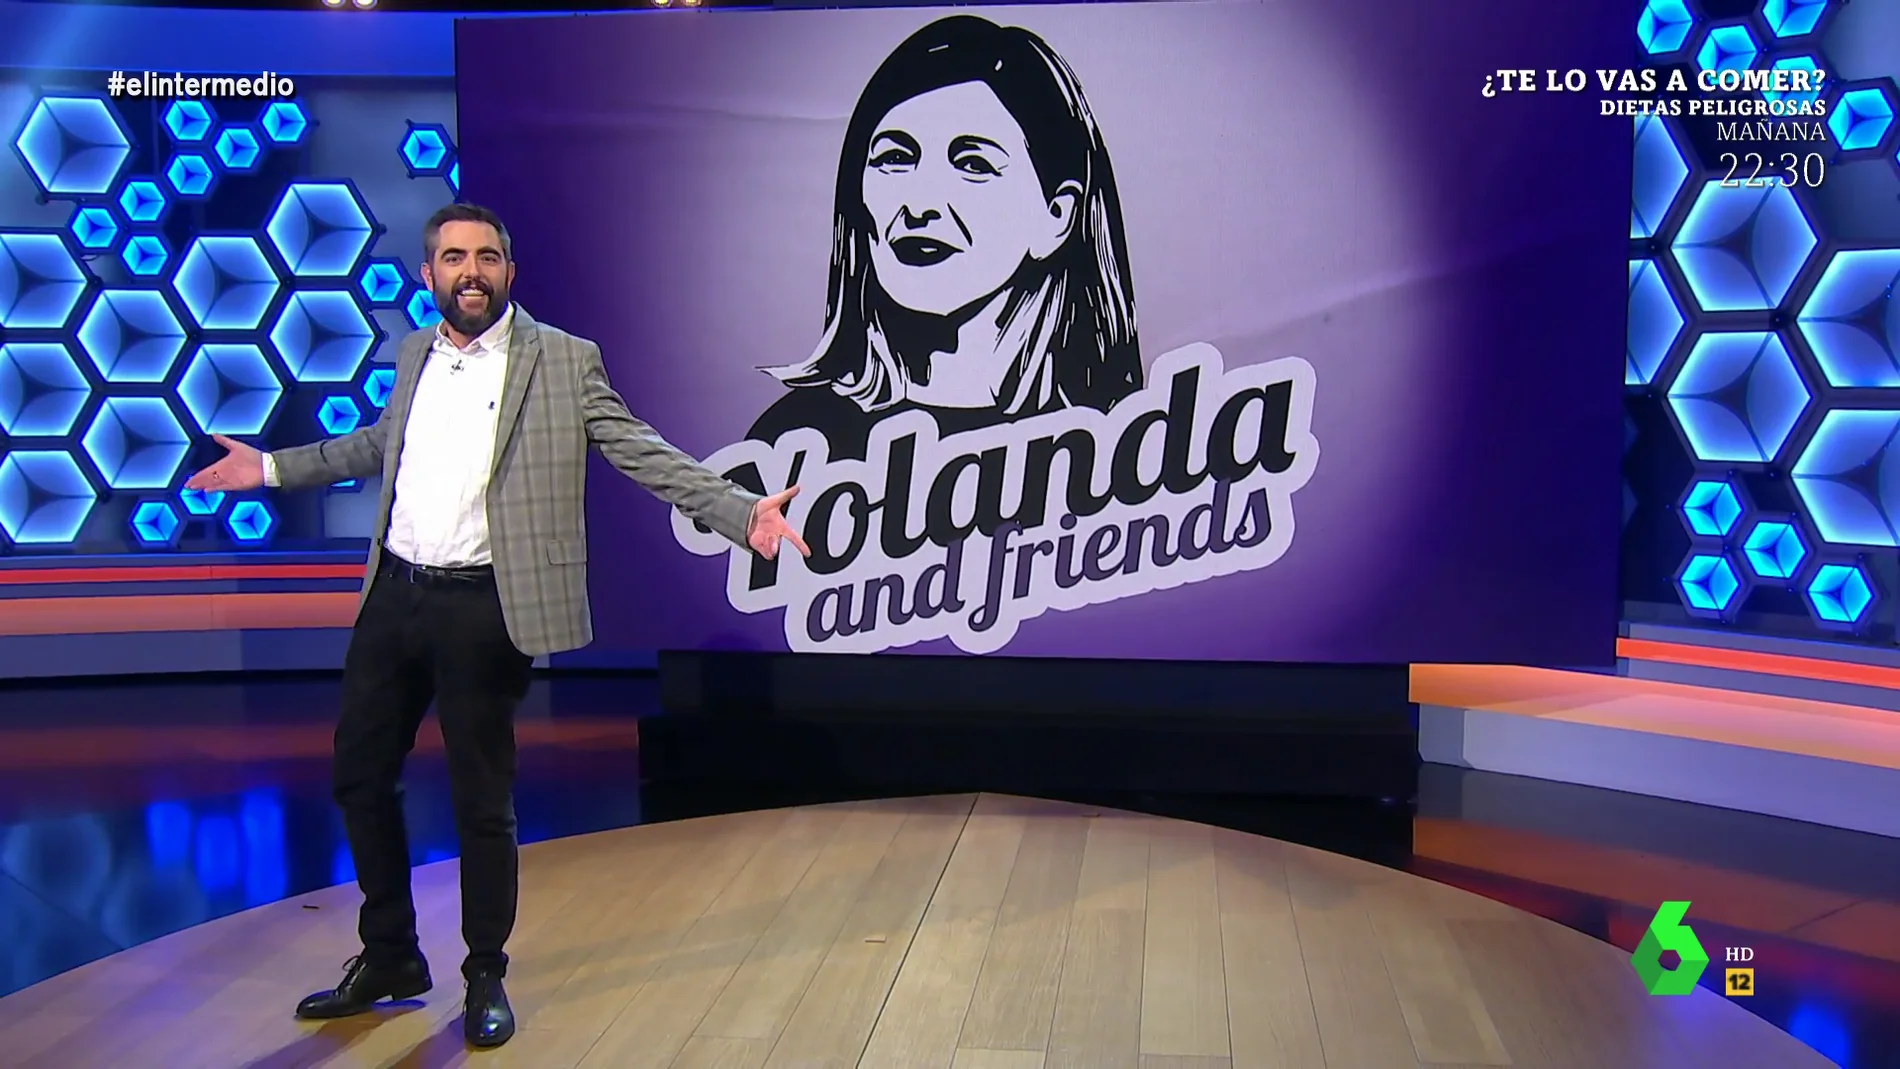 'Yolanda and friends': la idea de Dani Mateo para llamar a la plataforma política de izquierdas de Yolanda Díaz